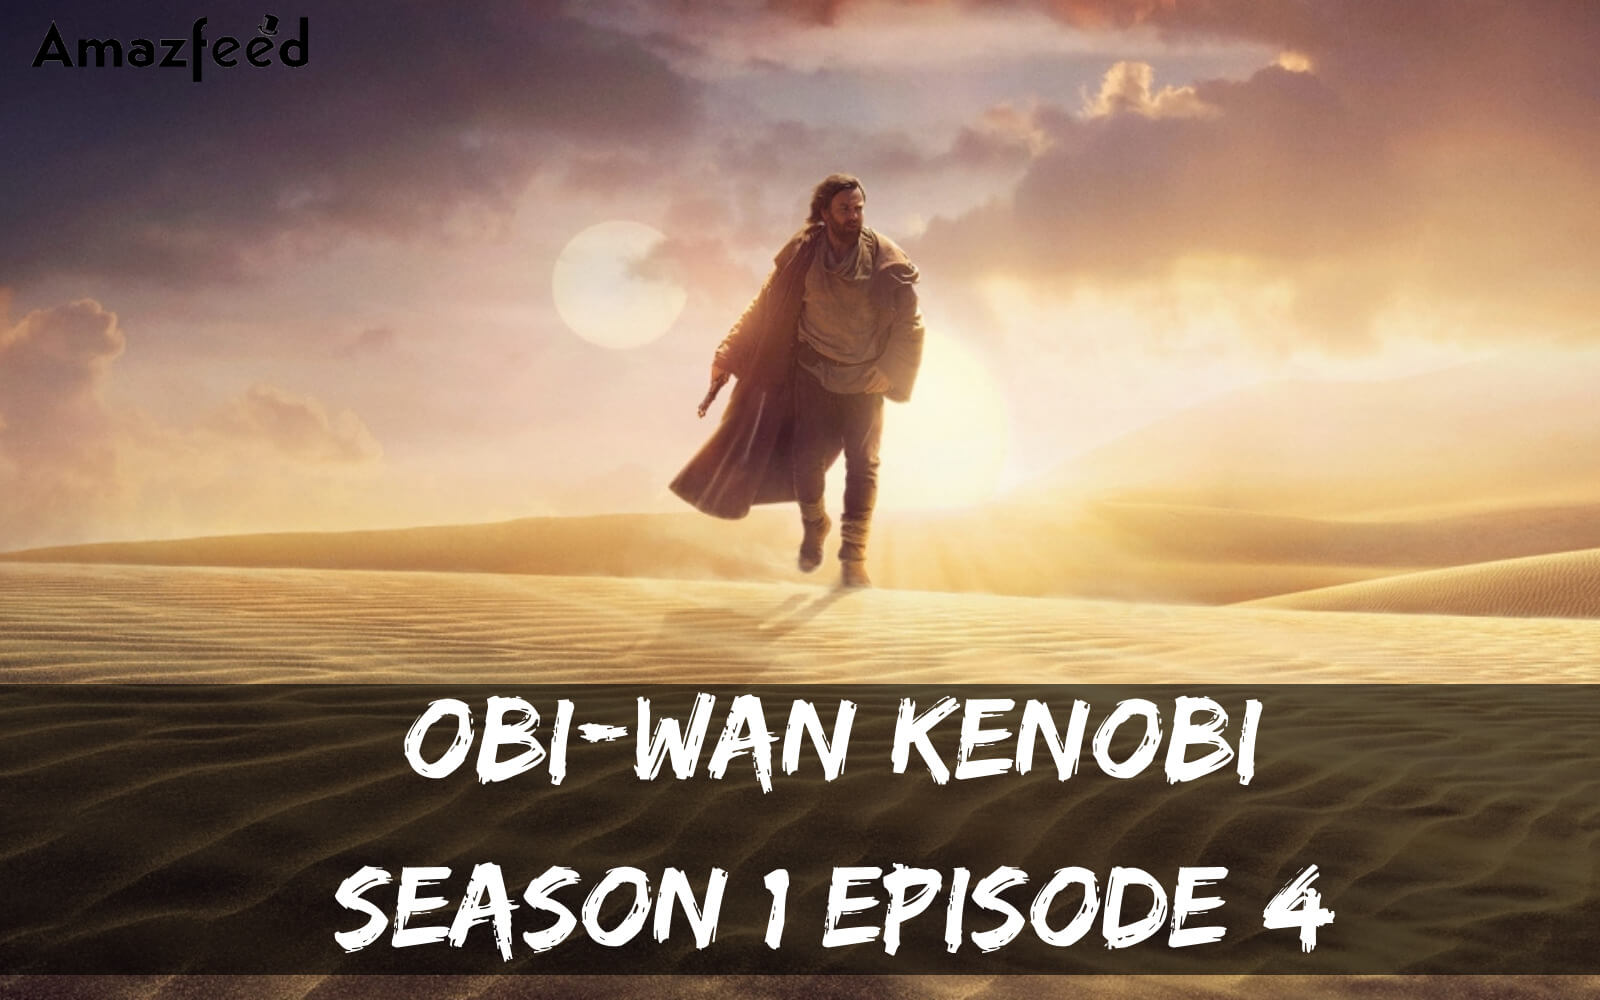 Obi-Wan Kenobi Season 1 Episode 4 release date